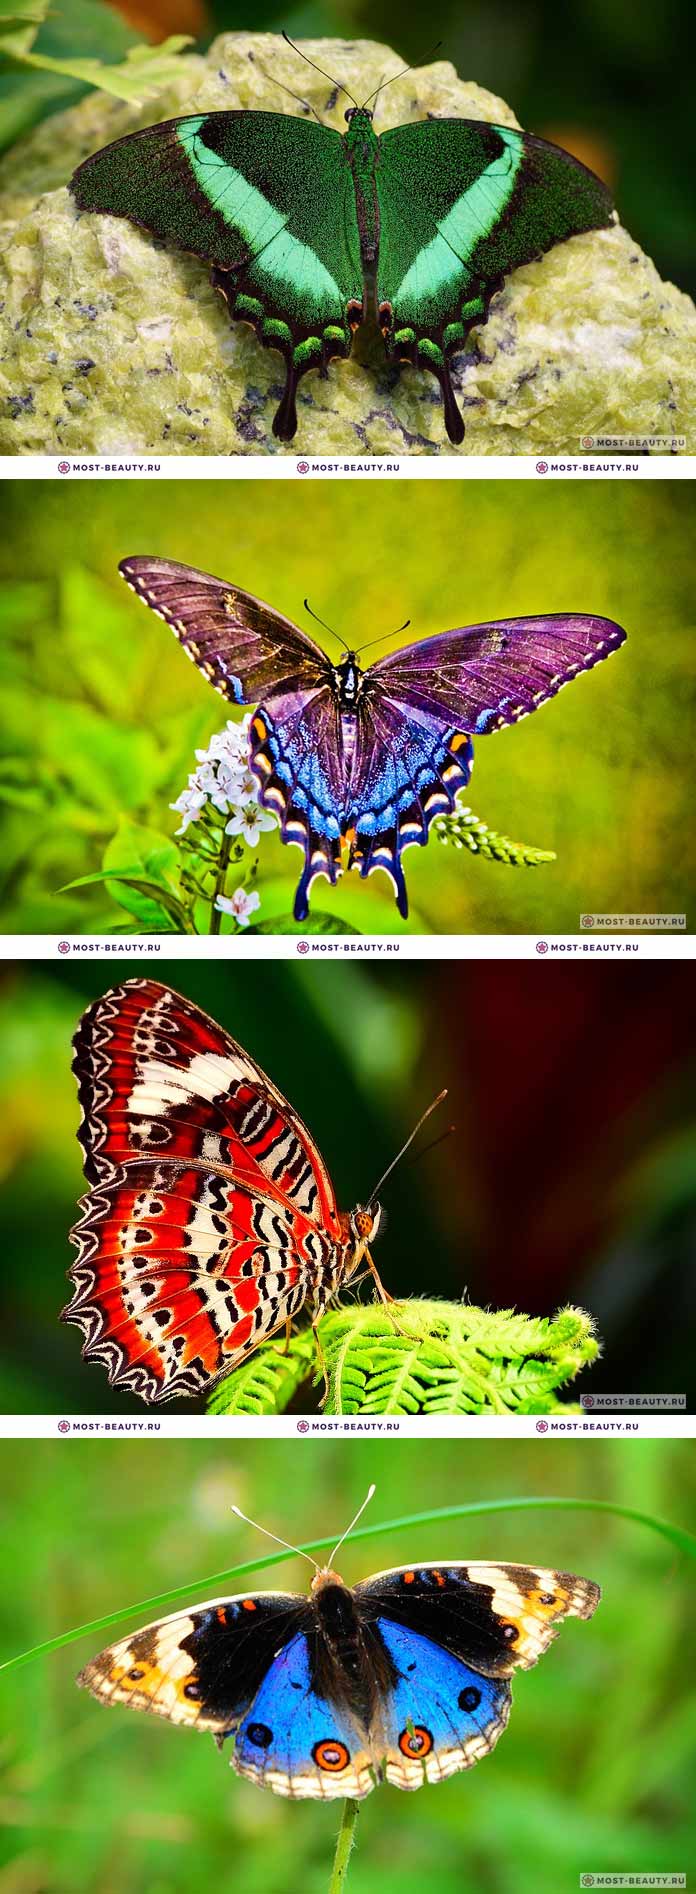 Самые красивые бабочки на фото (CC0)